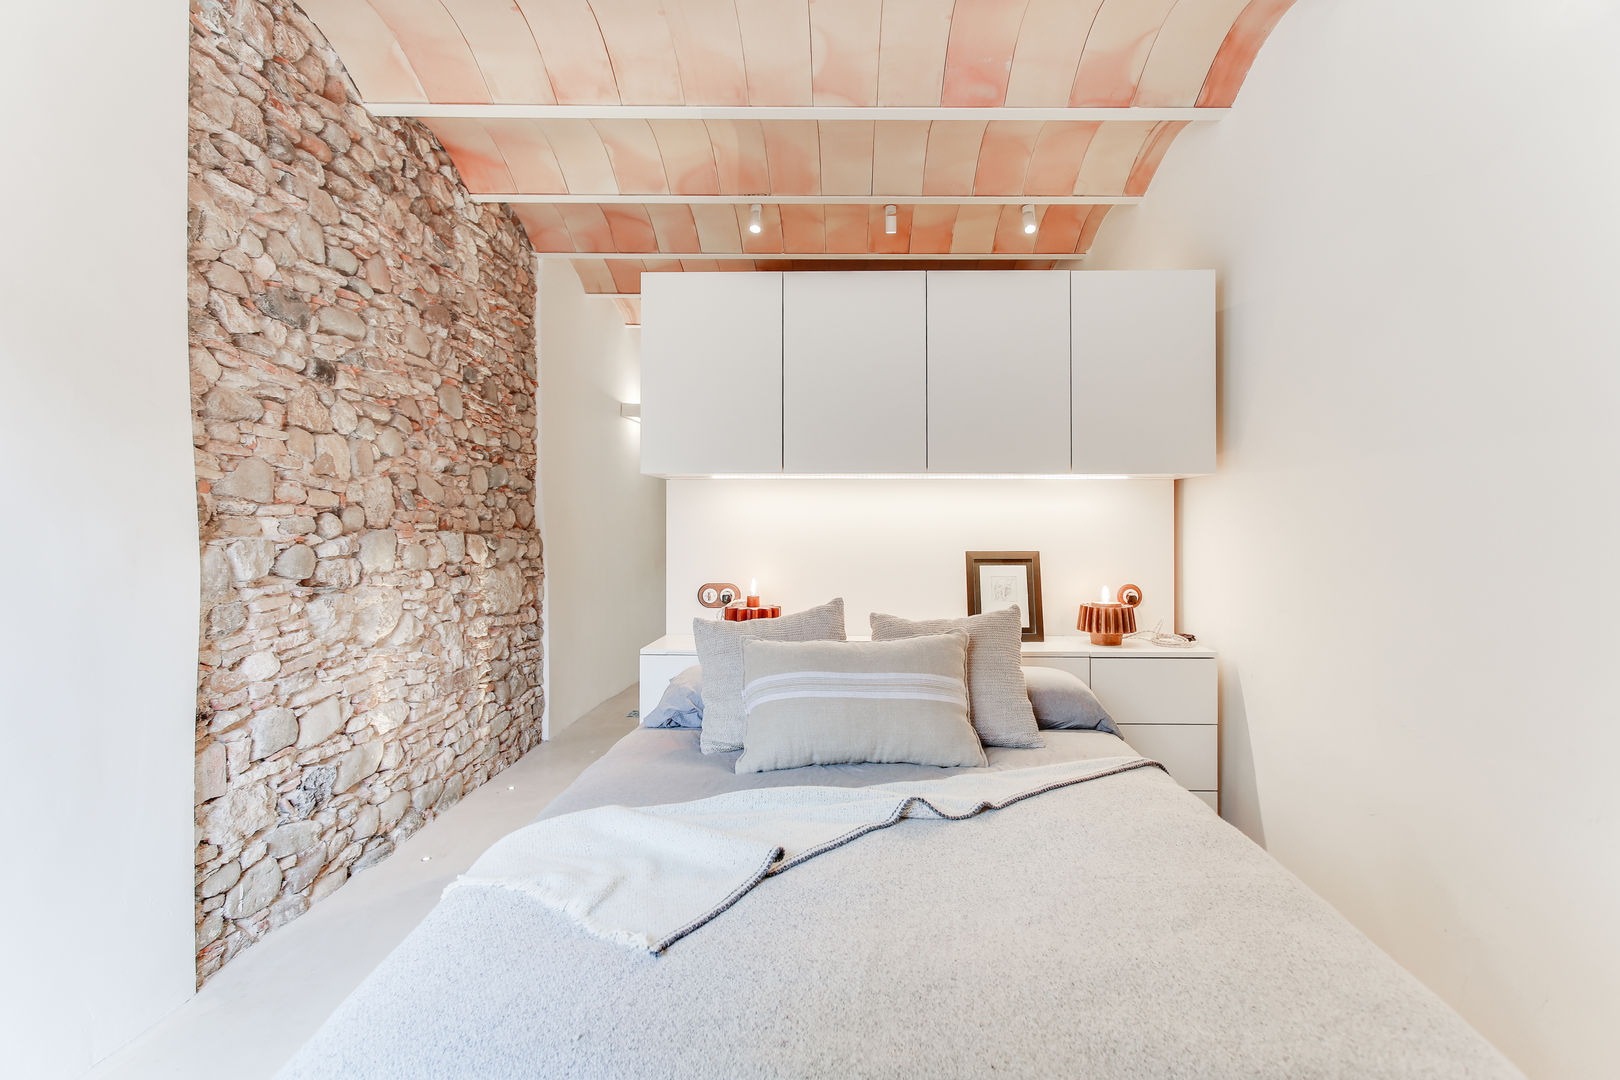 Casa de 3 niveles con rehabilitación integral para sus 140m2 , Lara Pujol | Interiorismo & Proyectos de diseño Lara Pujol | Interiorismo & Proyectos de diseño Dormitorios mediterráneos